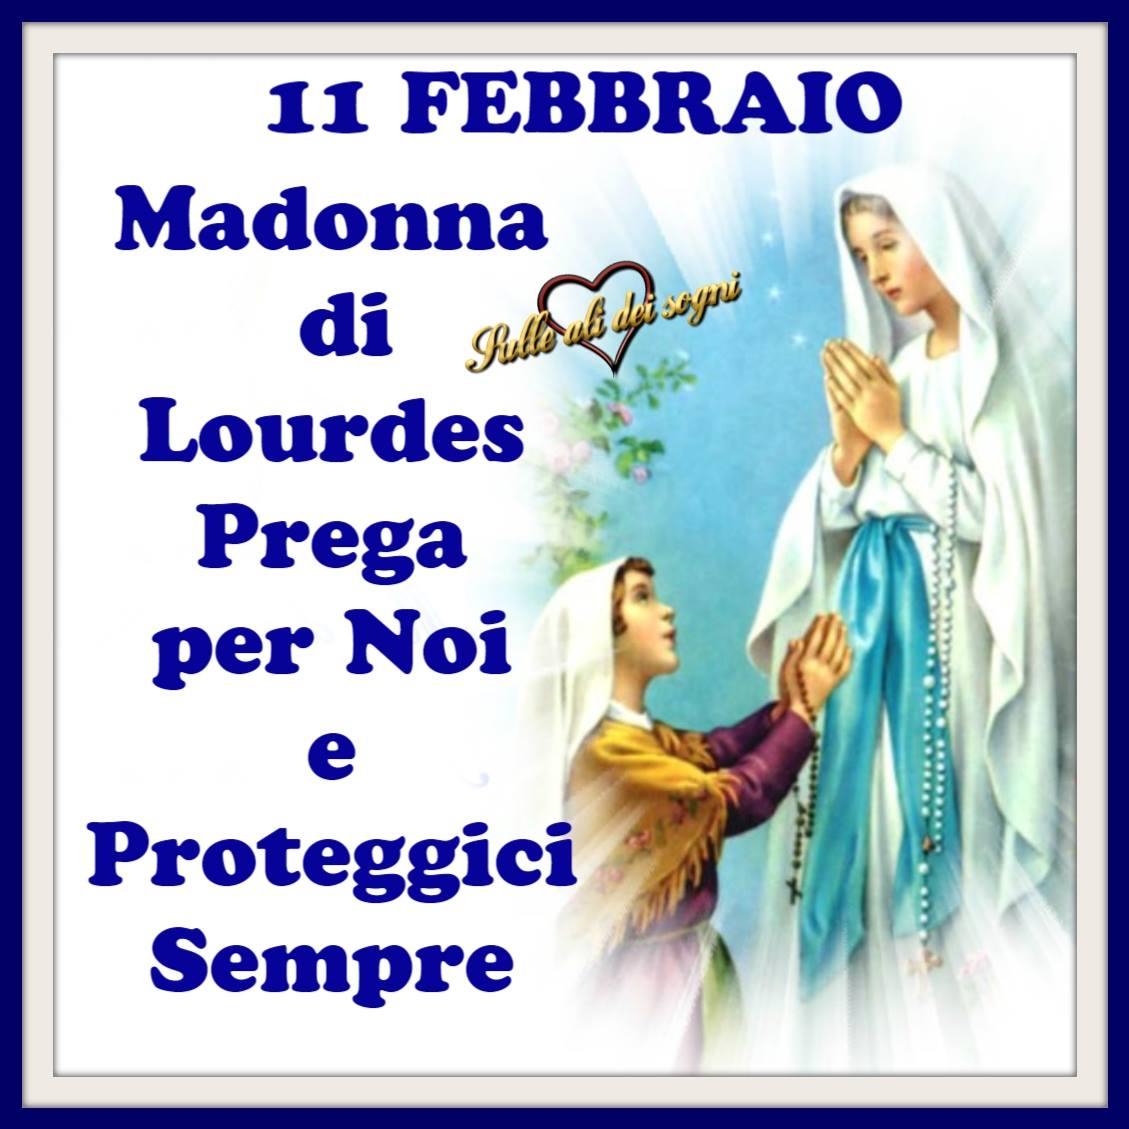 11 Febbraio Madonna di Lourdes...